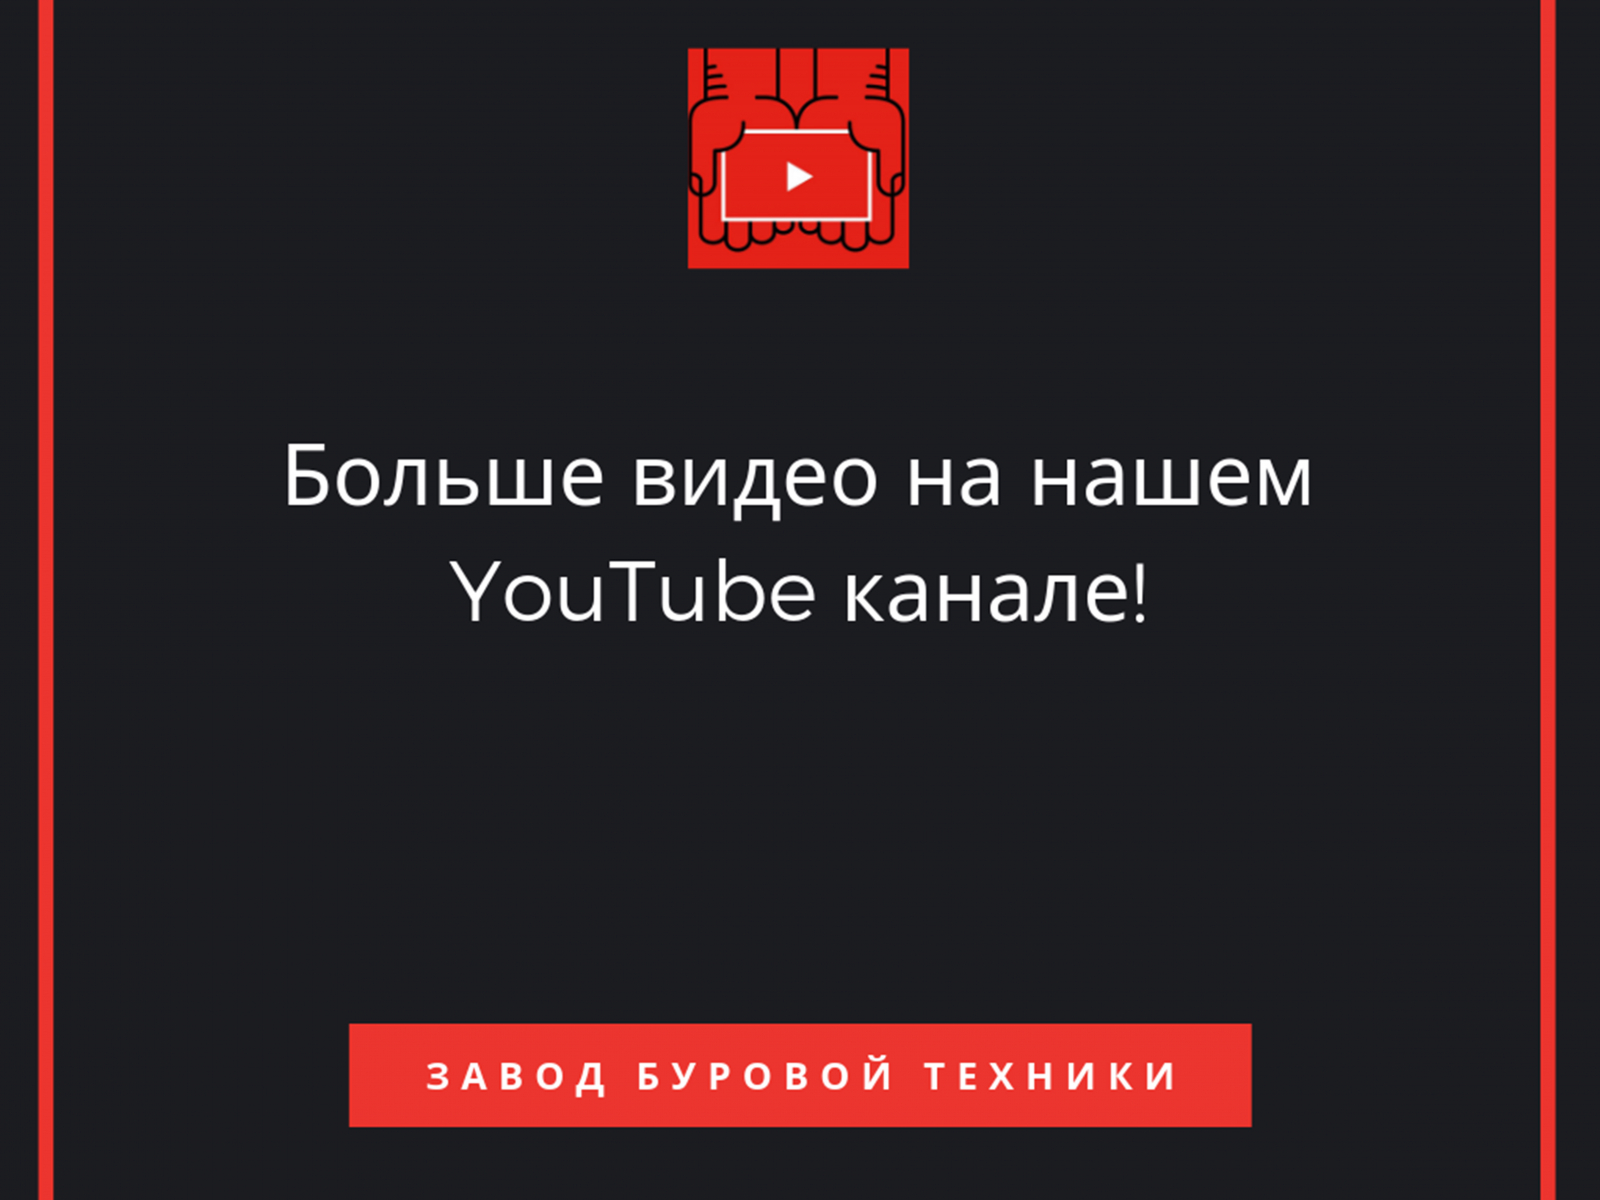 Смотрите нас на YouTube!